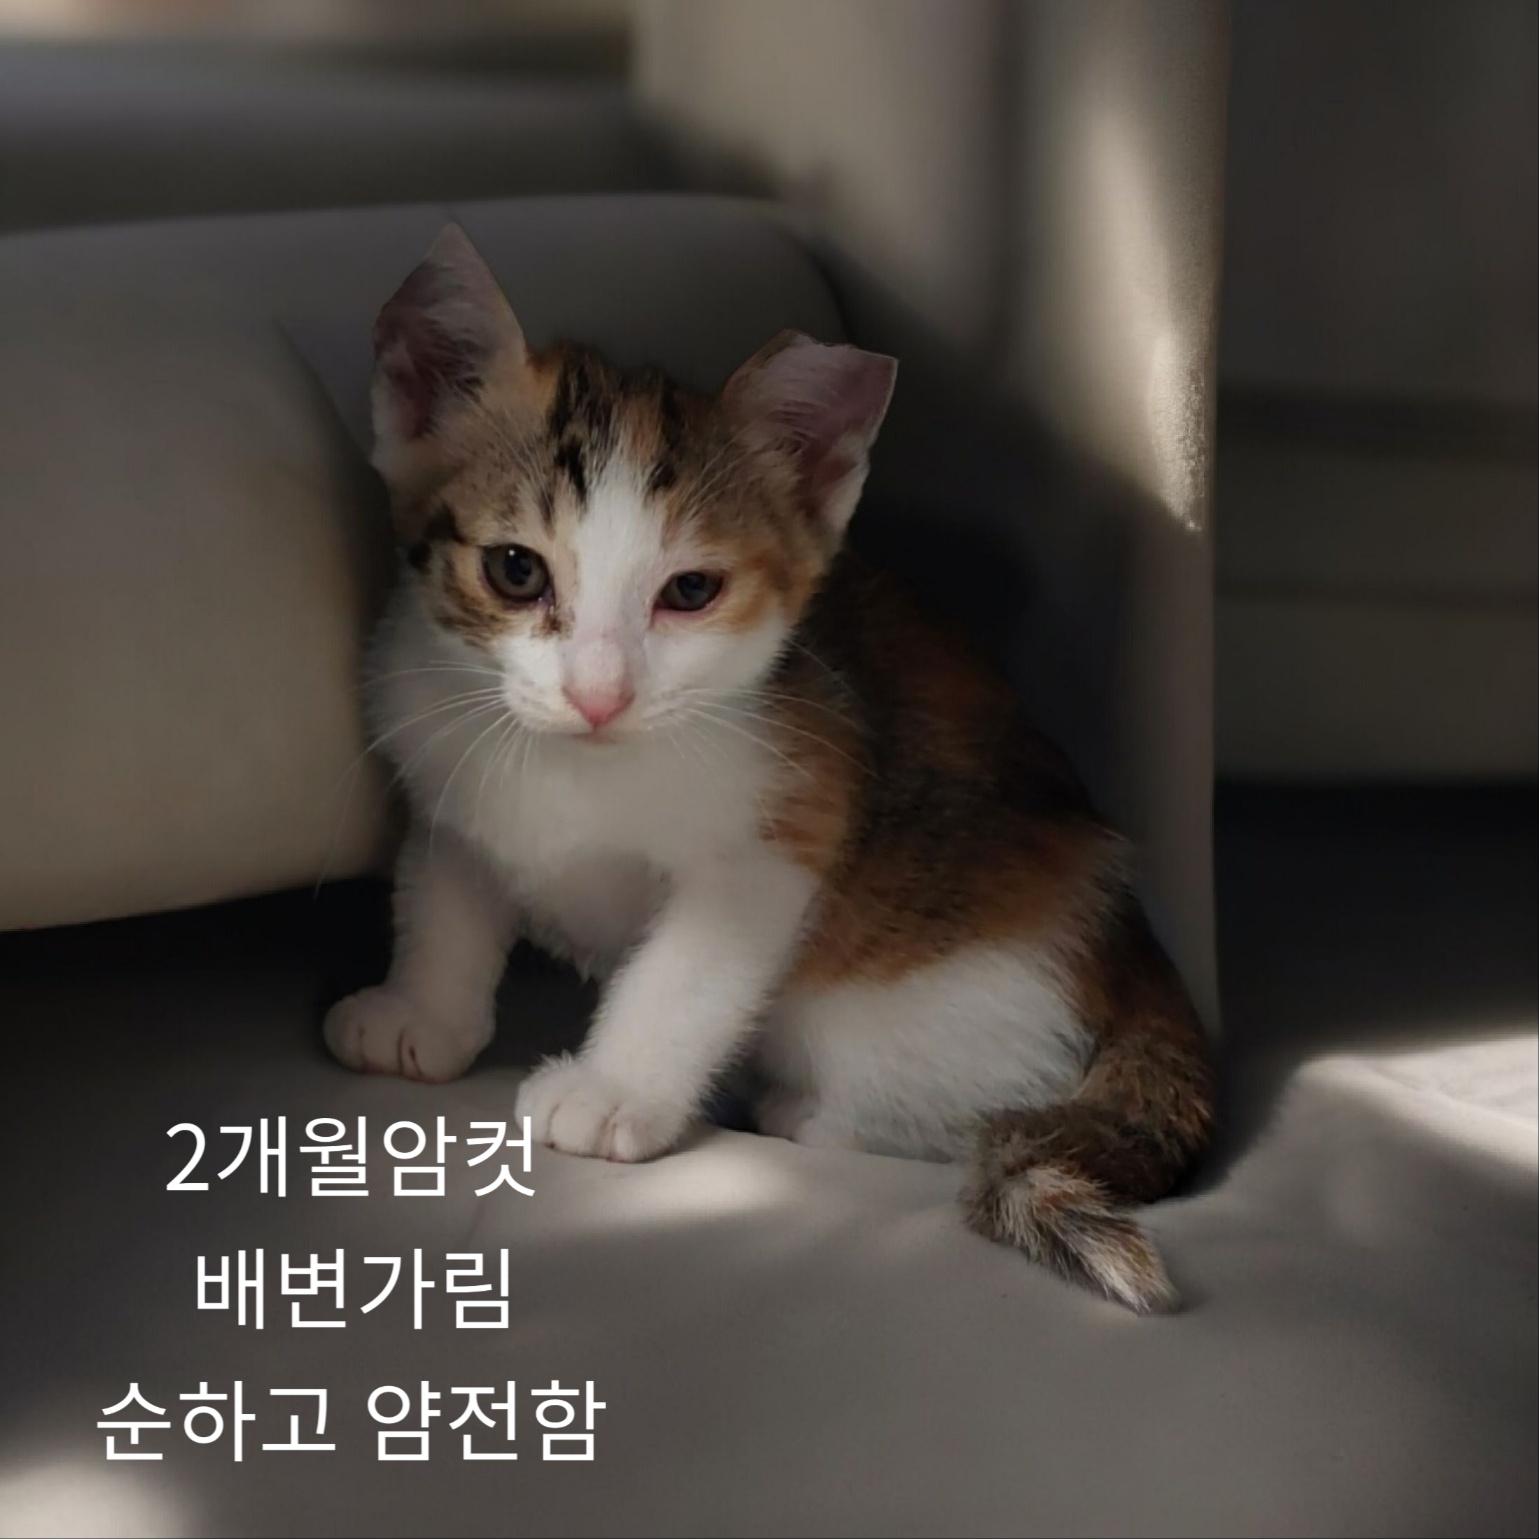 공고 번호가 경북-성주-2024-00236인 한국 고양이 동물 사진